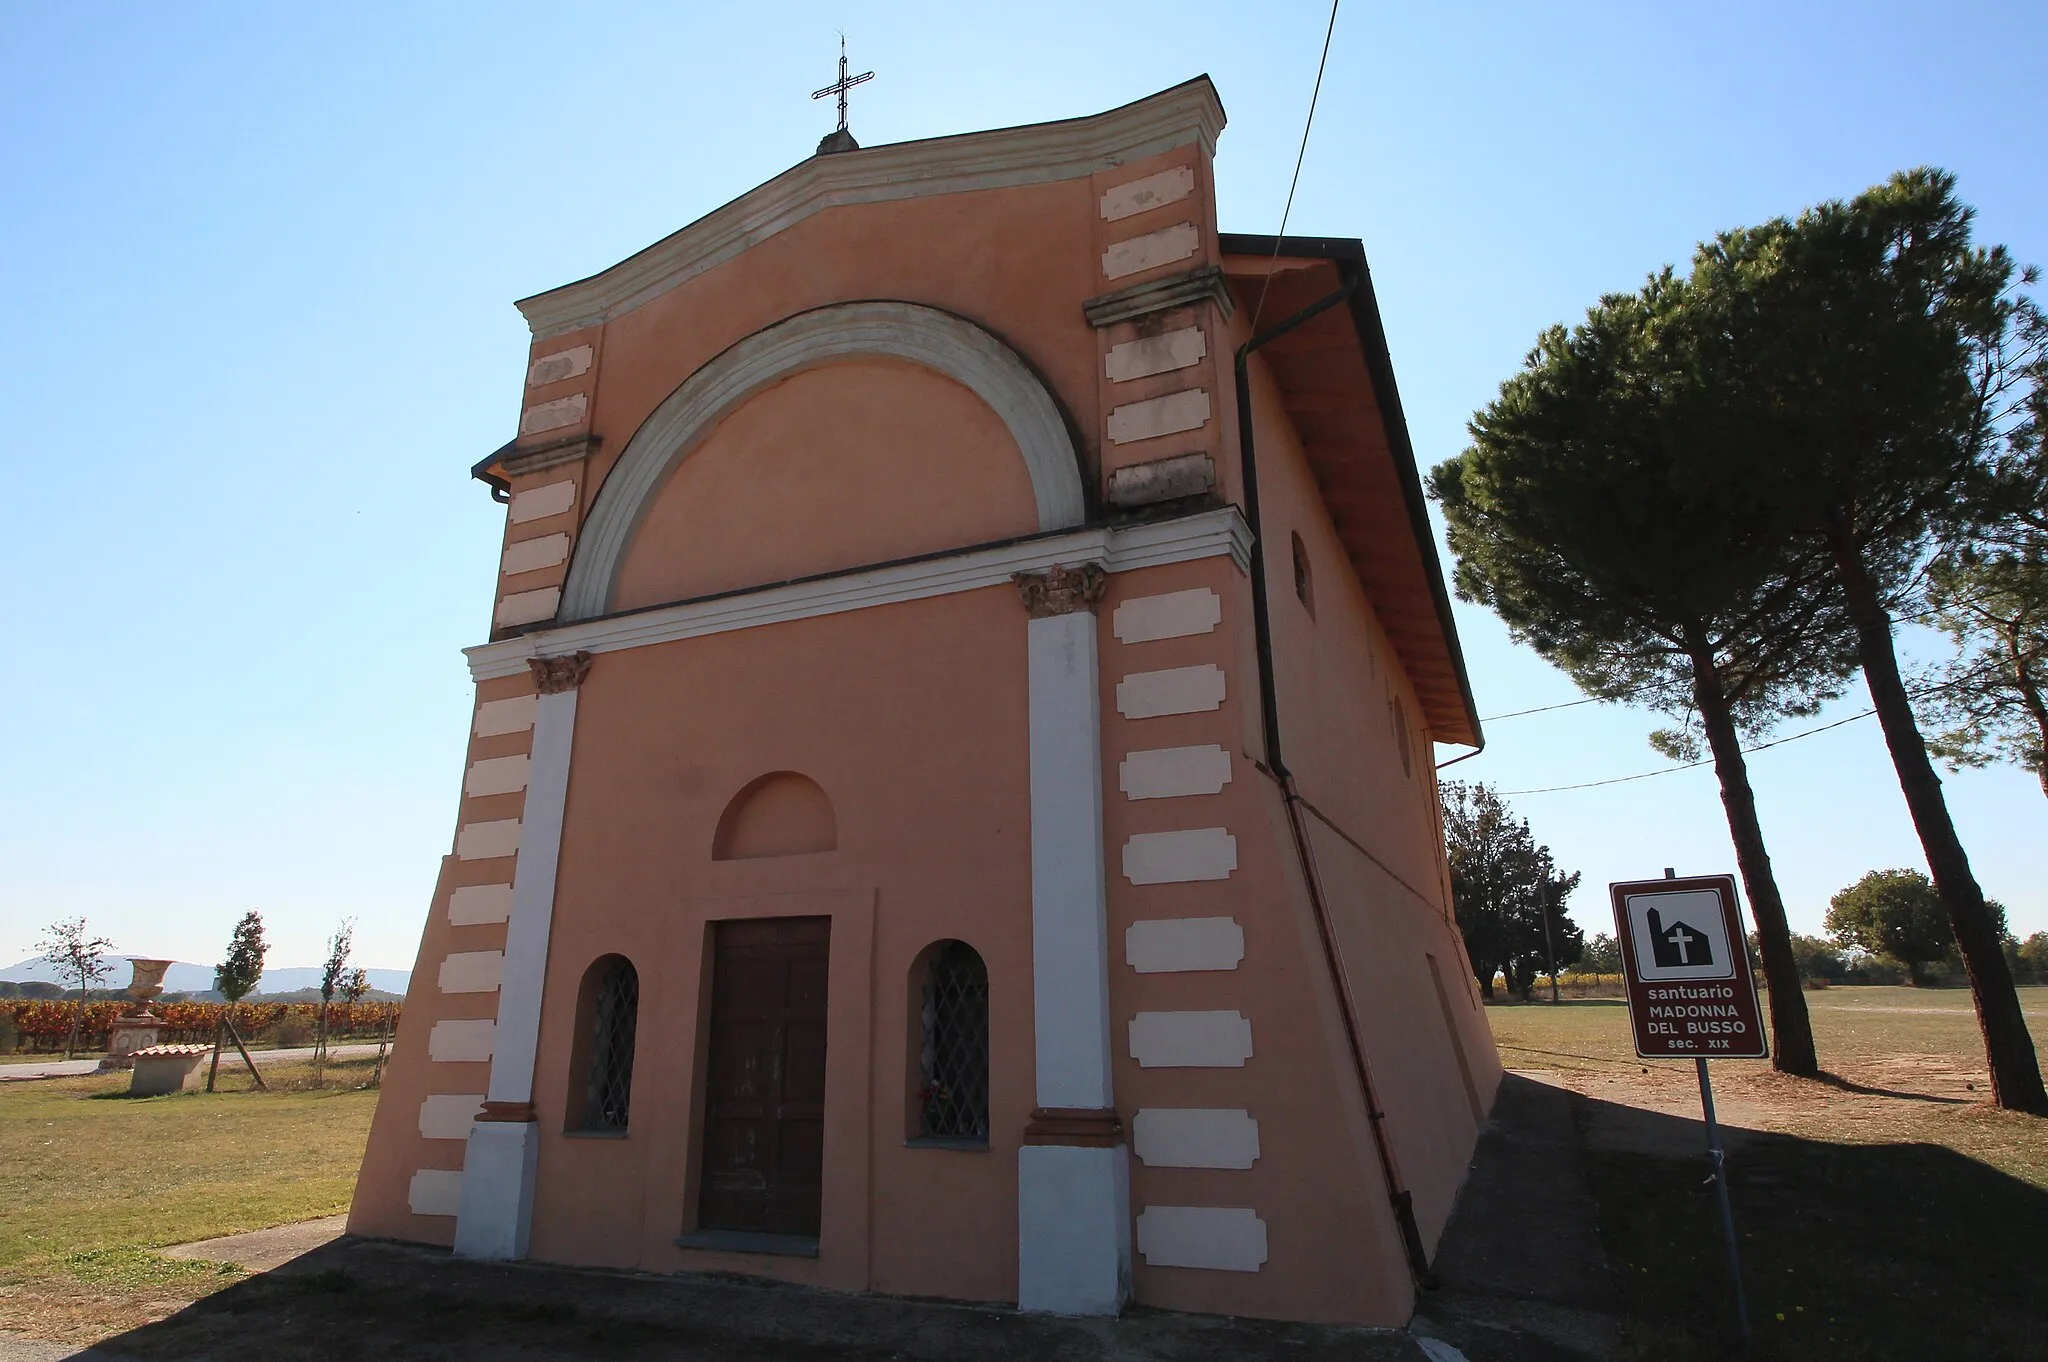 Photo showing: Church/Sanctuary Madonna del Busso, Panicarola, hamlet of Castiglione del Lago, Province of Perugia, Umbria, Italy